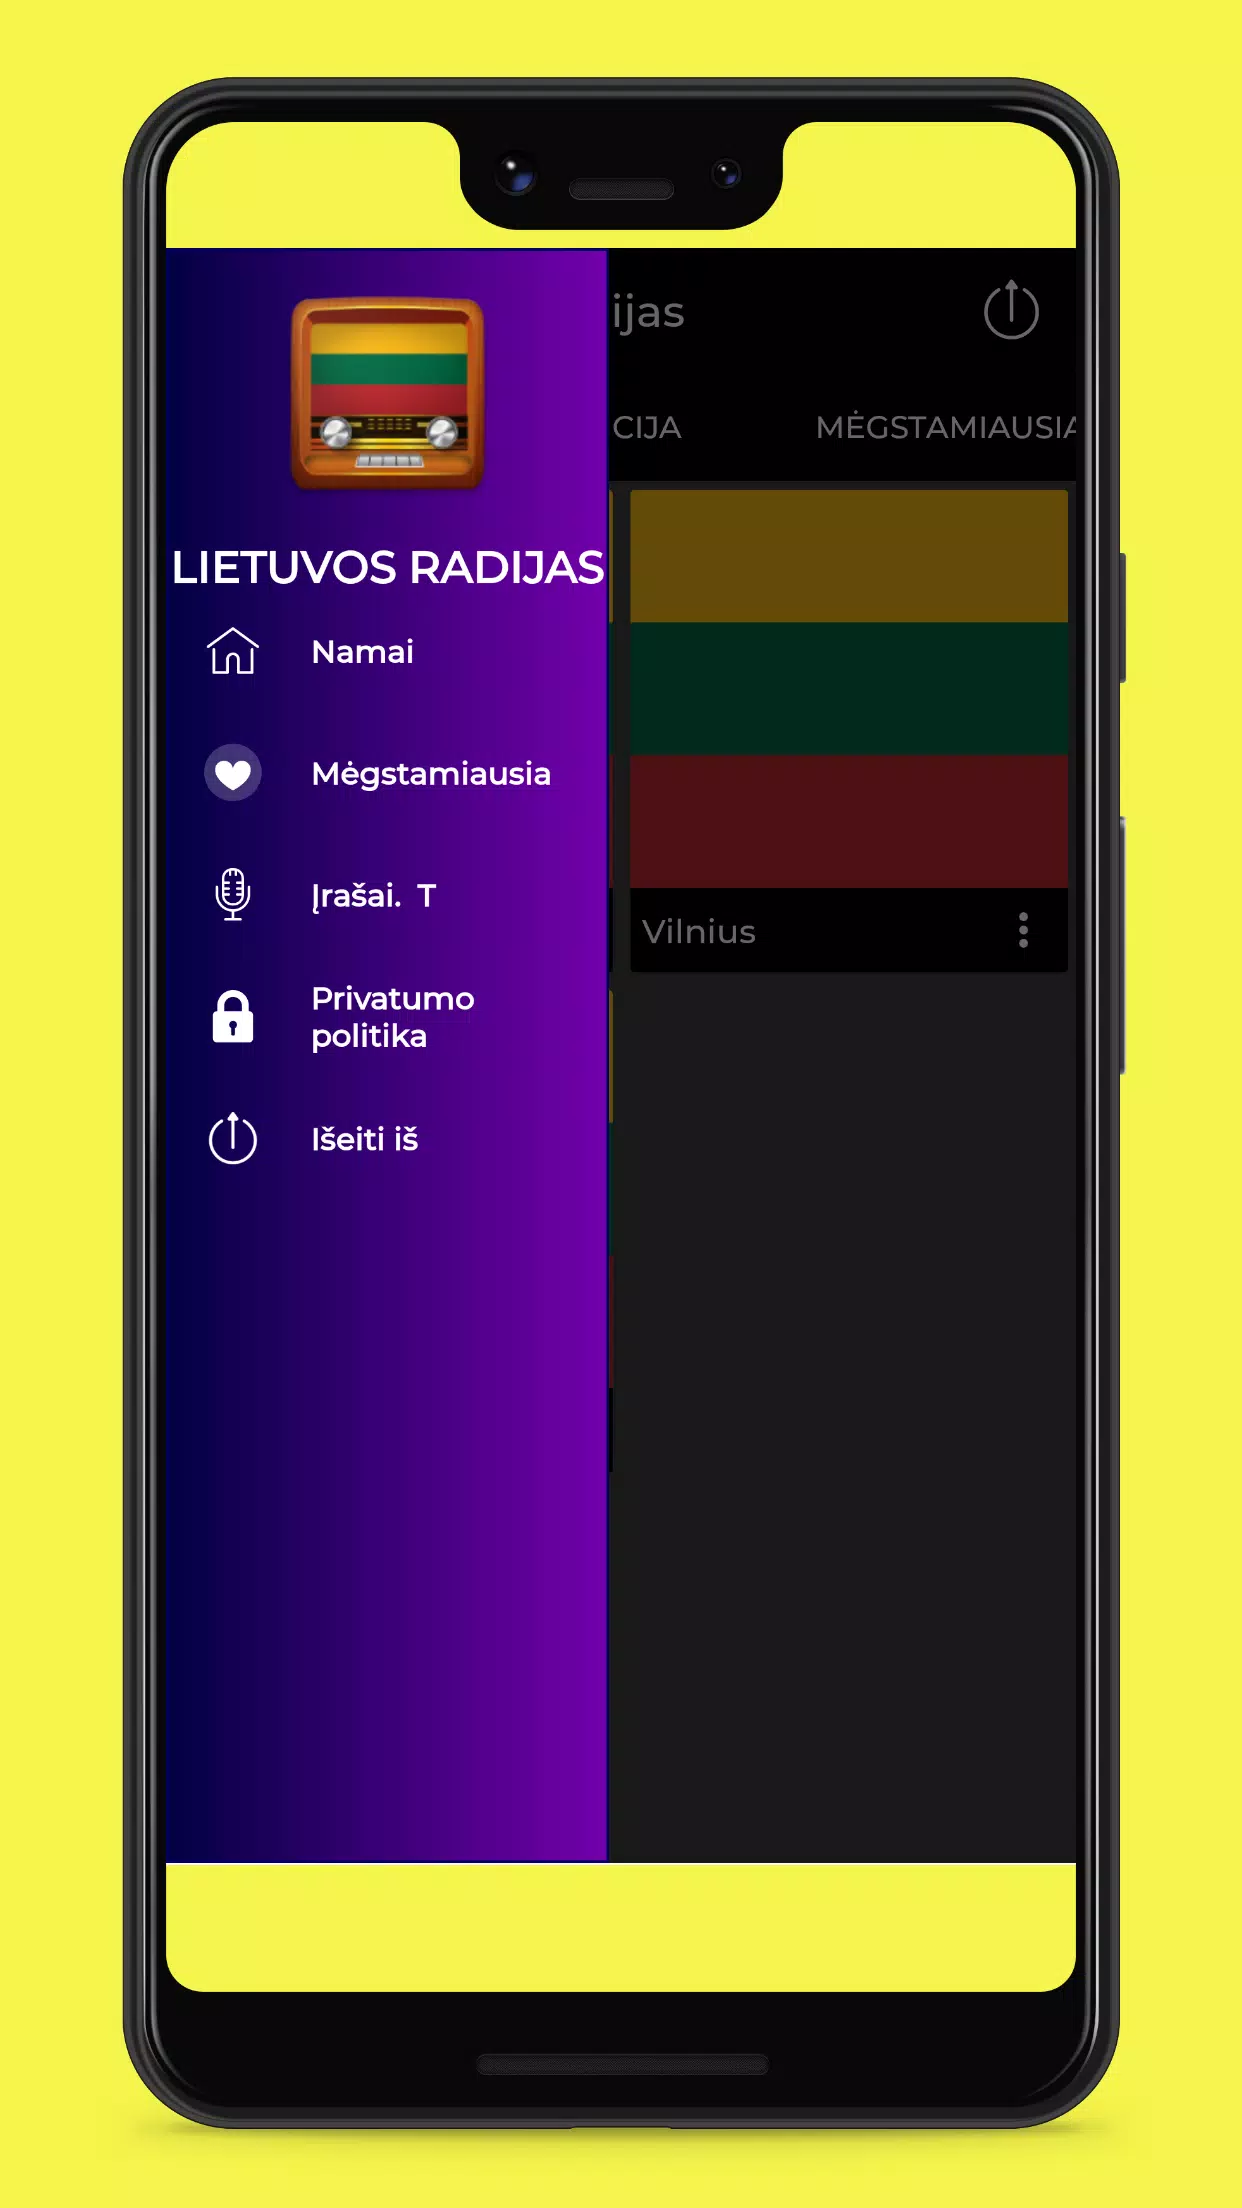 Lietuvos Radijas - Radijas Nemokamai Internete安卓版应用APK下载